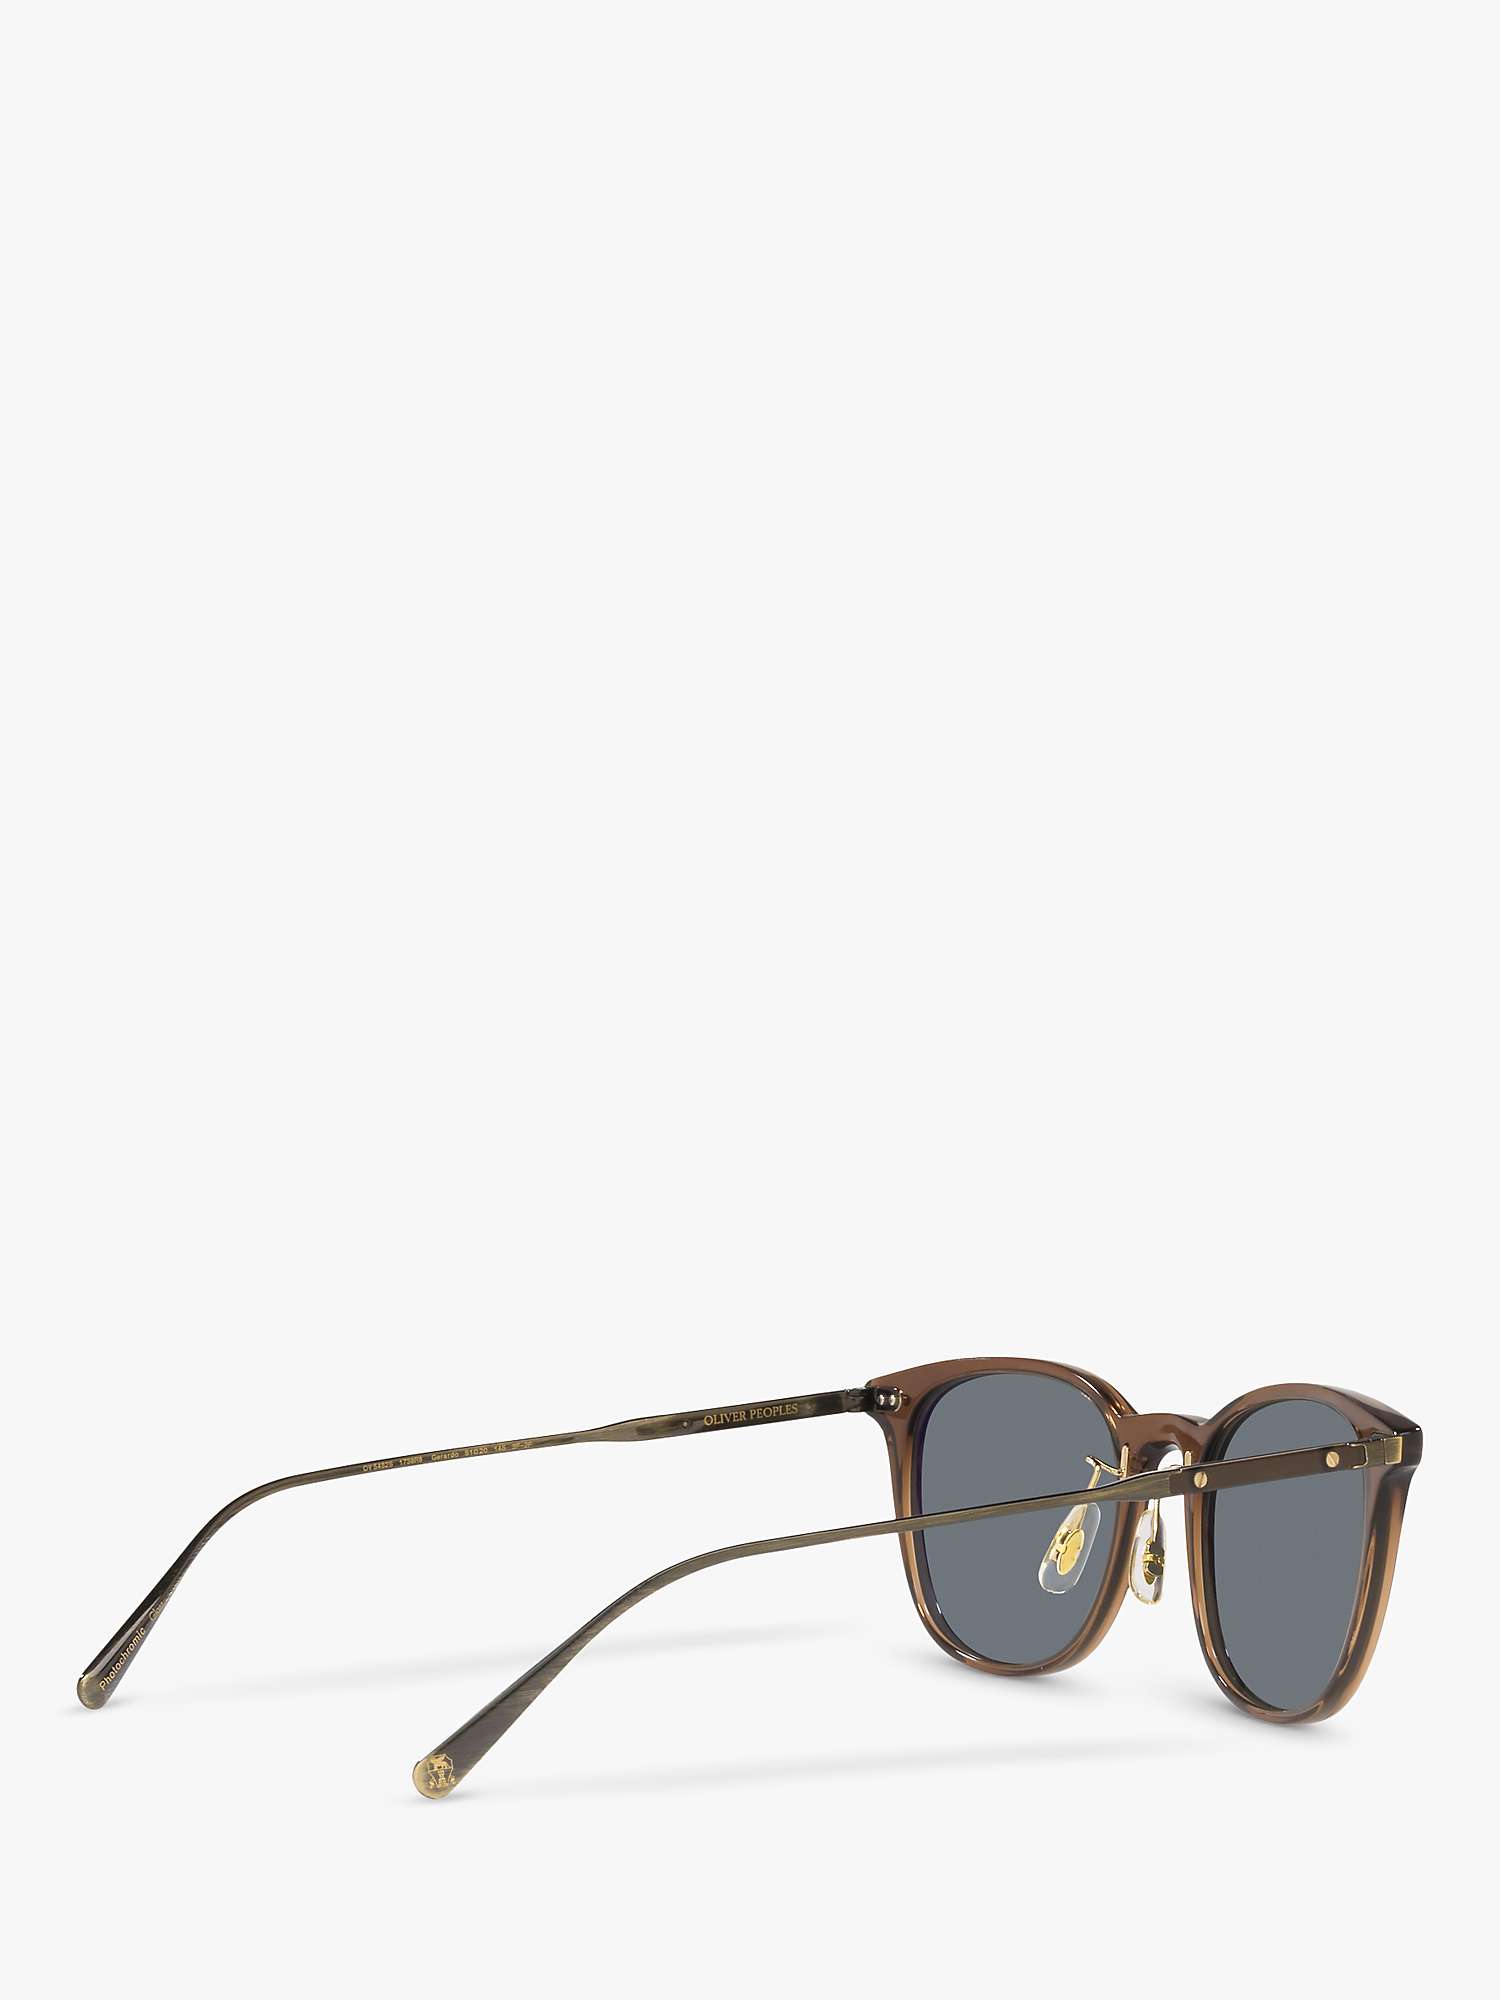 Buy Oliver Peoples OV5482S Men's Gerardo sunglasses, Translucent Brown Online at johnlewis.com